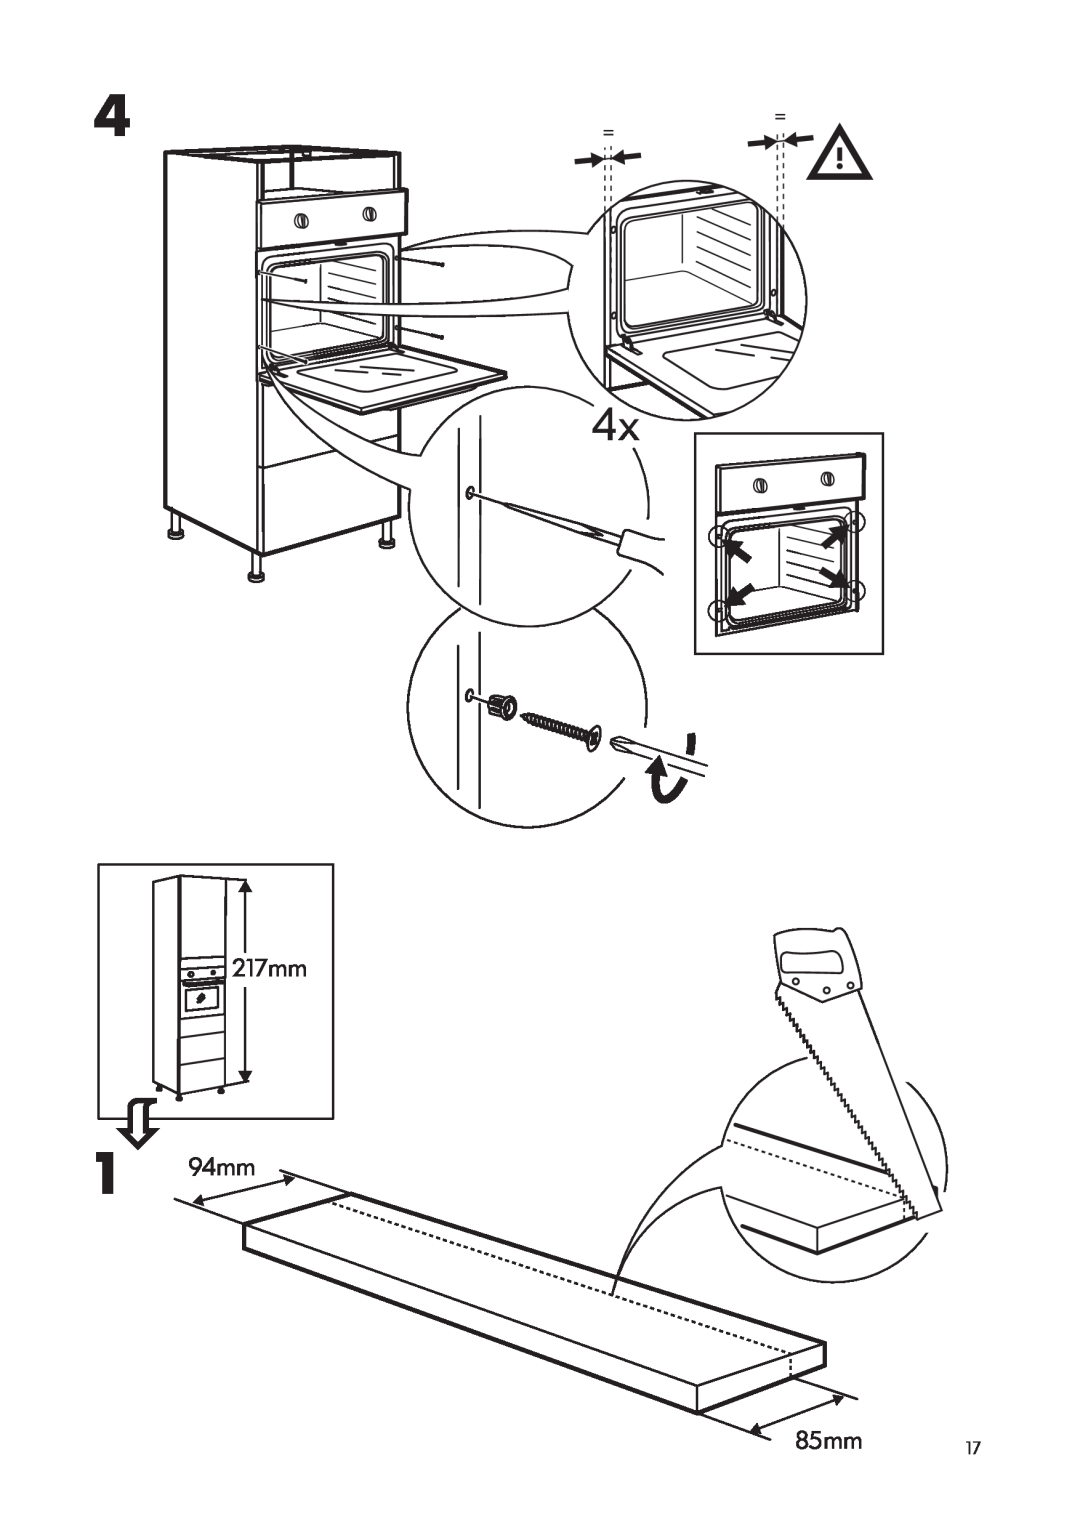 IKEA OV3 manual 217mm 94mm, 85mm, = = 